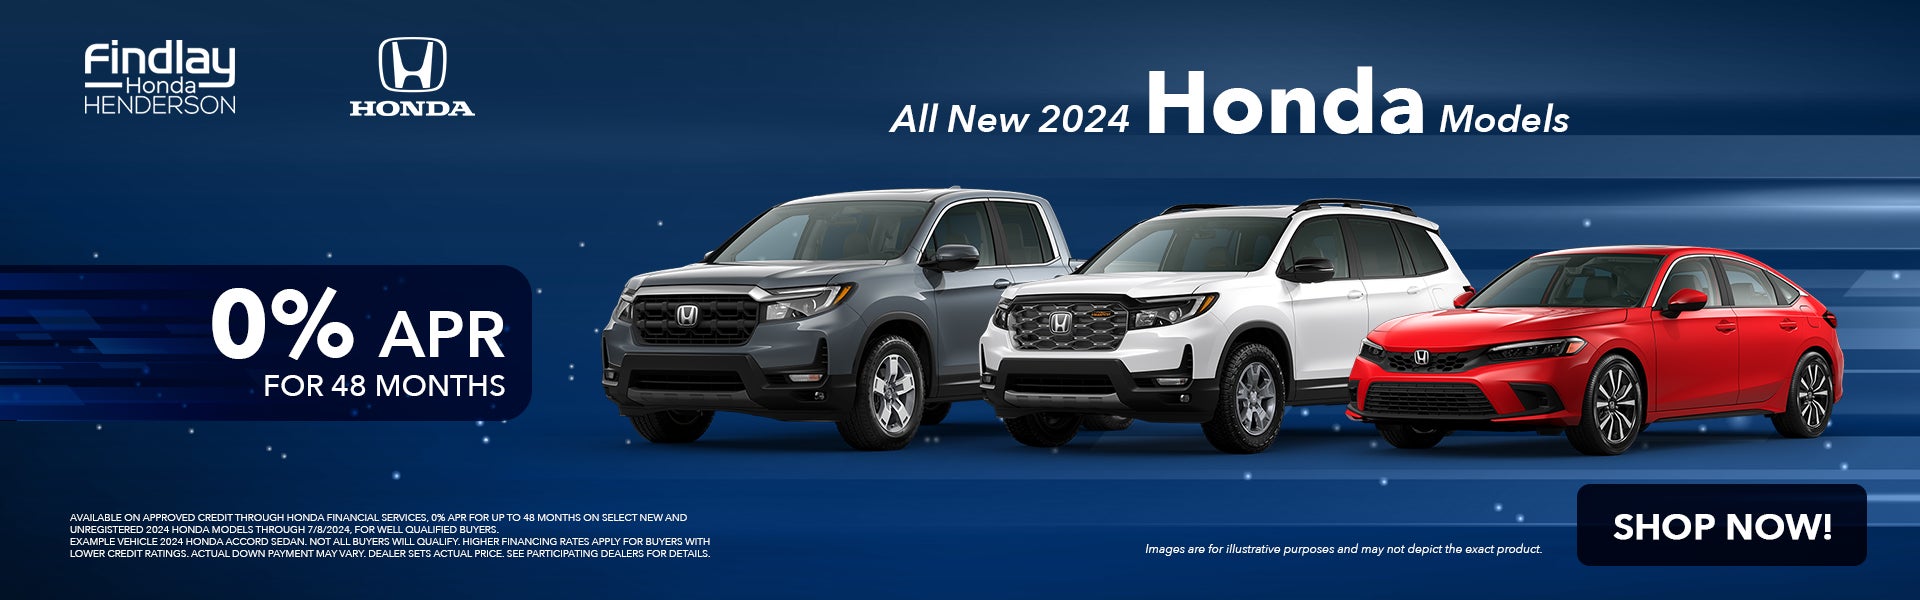 2024 New Hondas